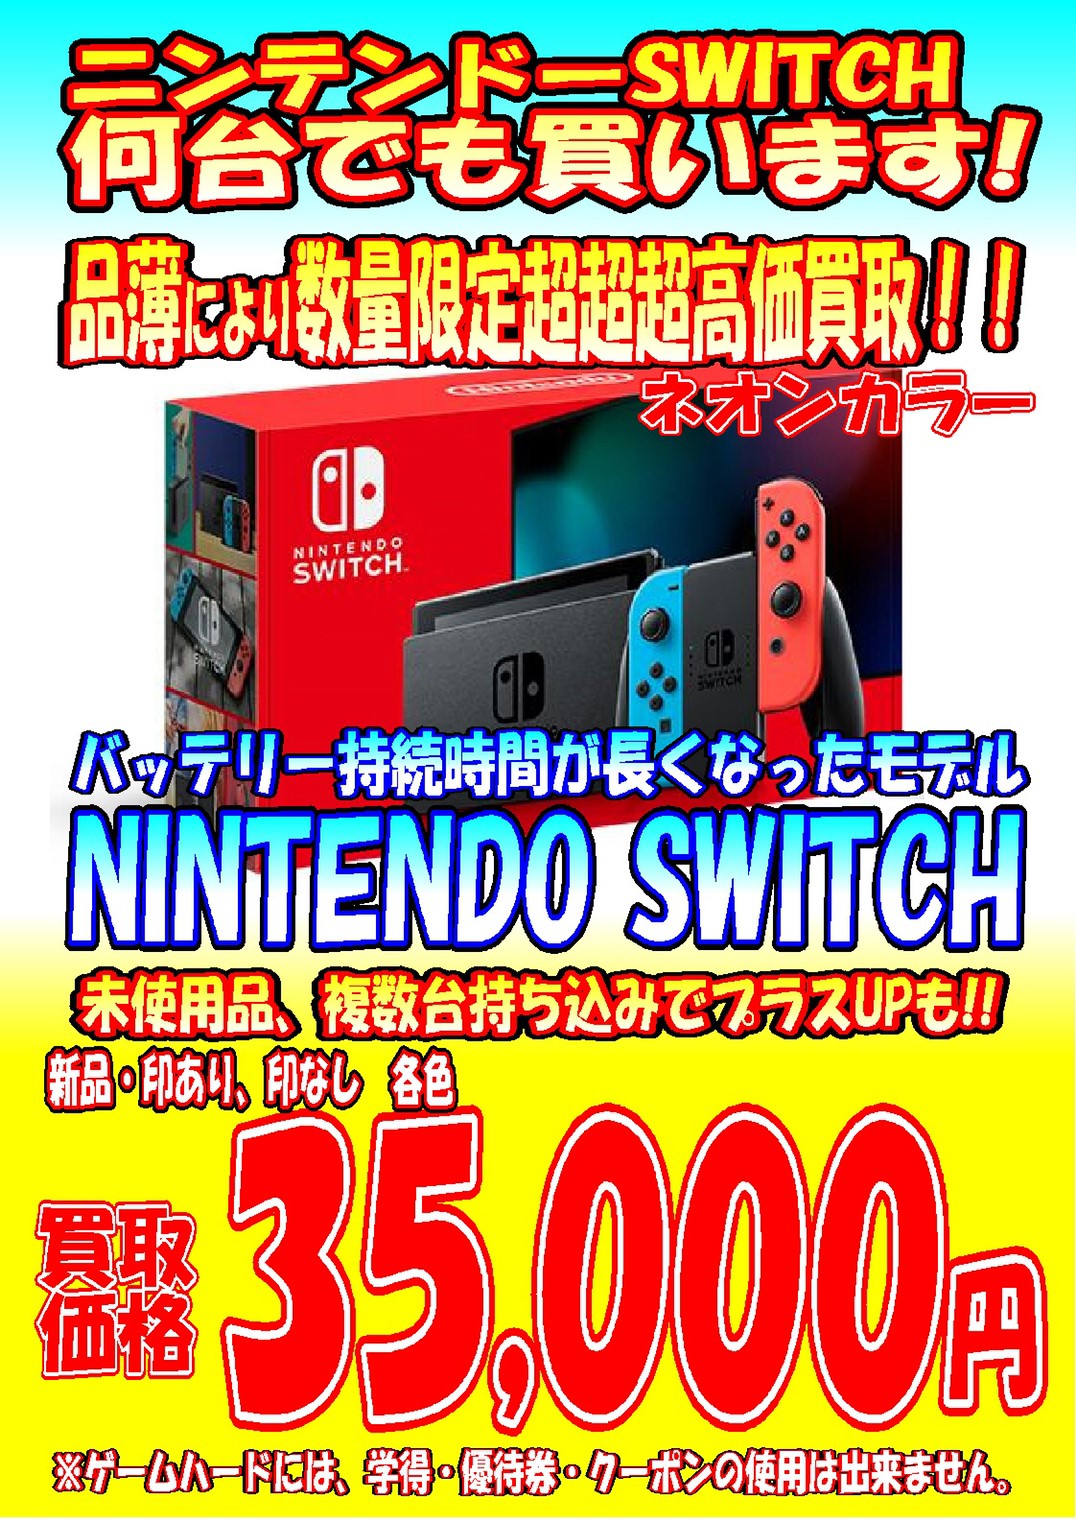 【新品】Nintendo Switch Lite 新色コーラル 店舗印なし